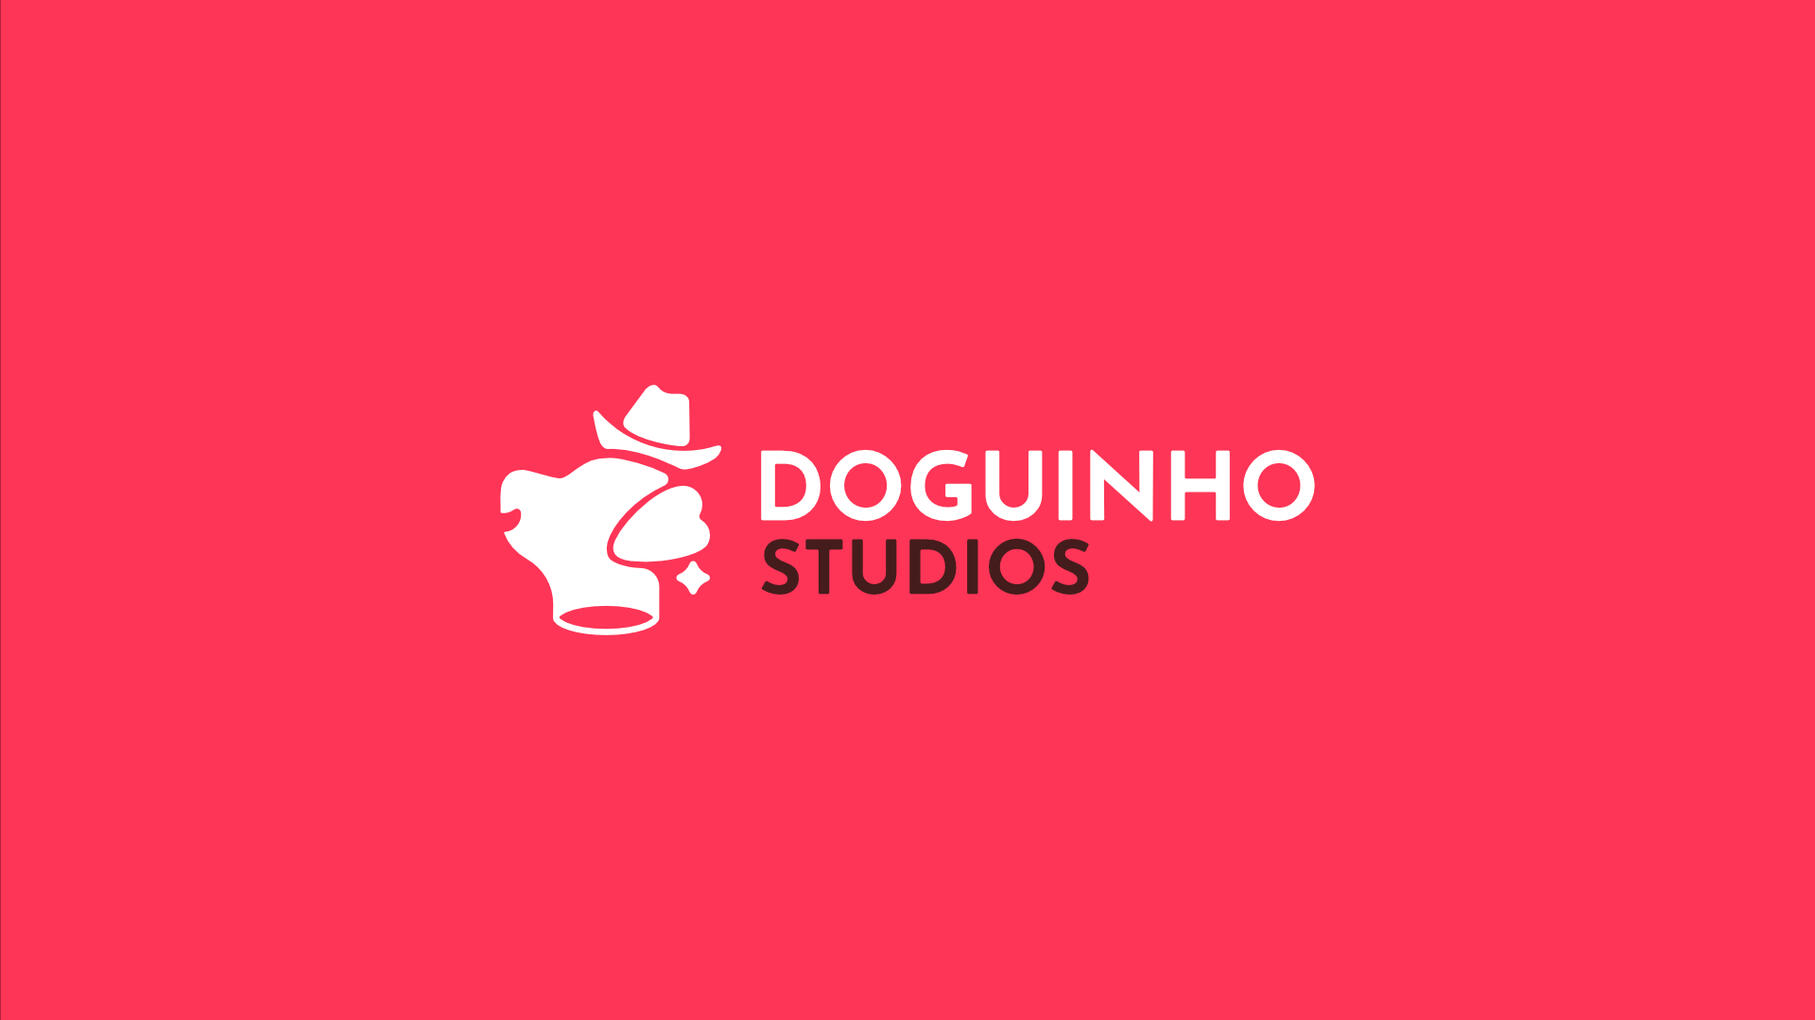 Doguinho Studios